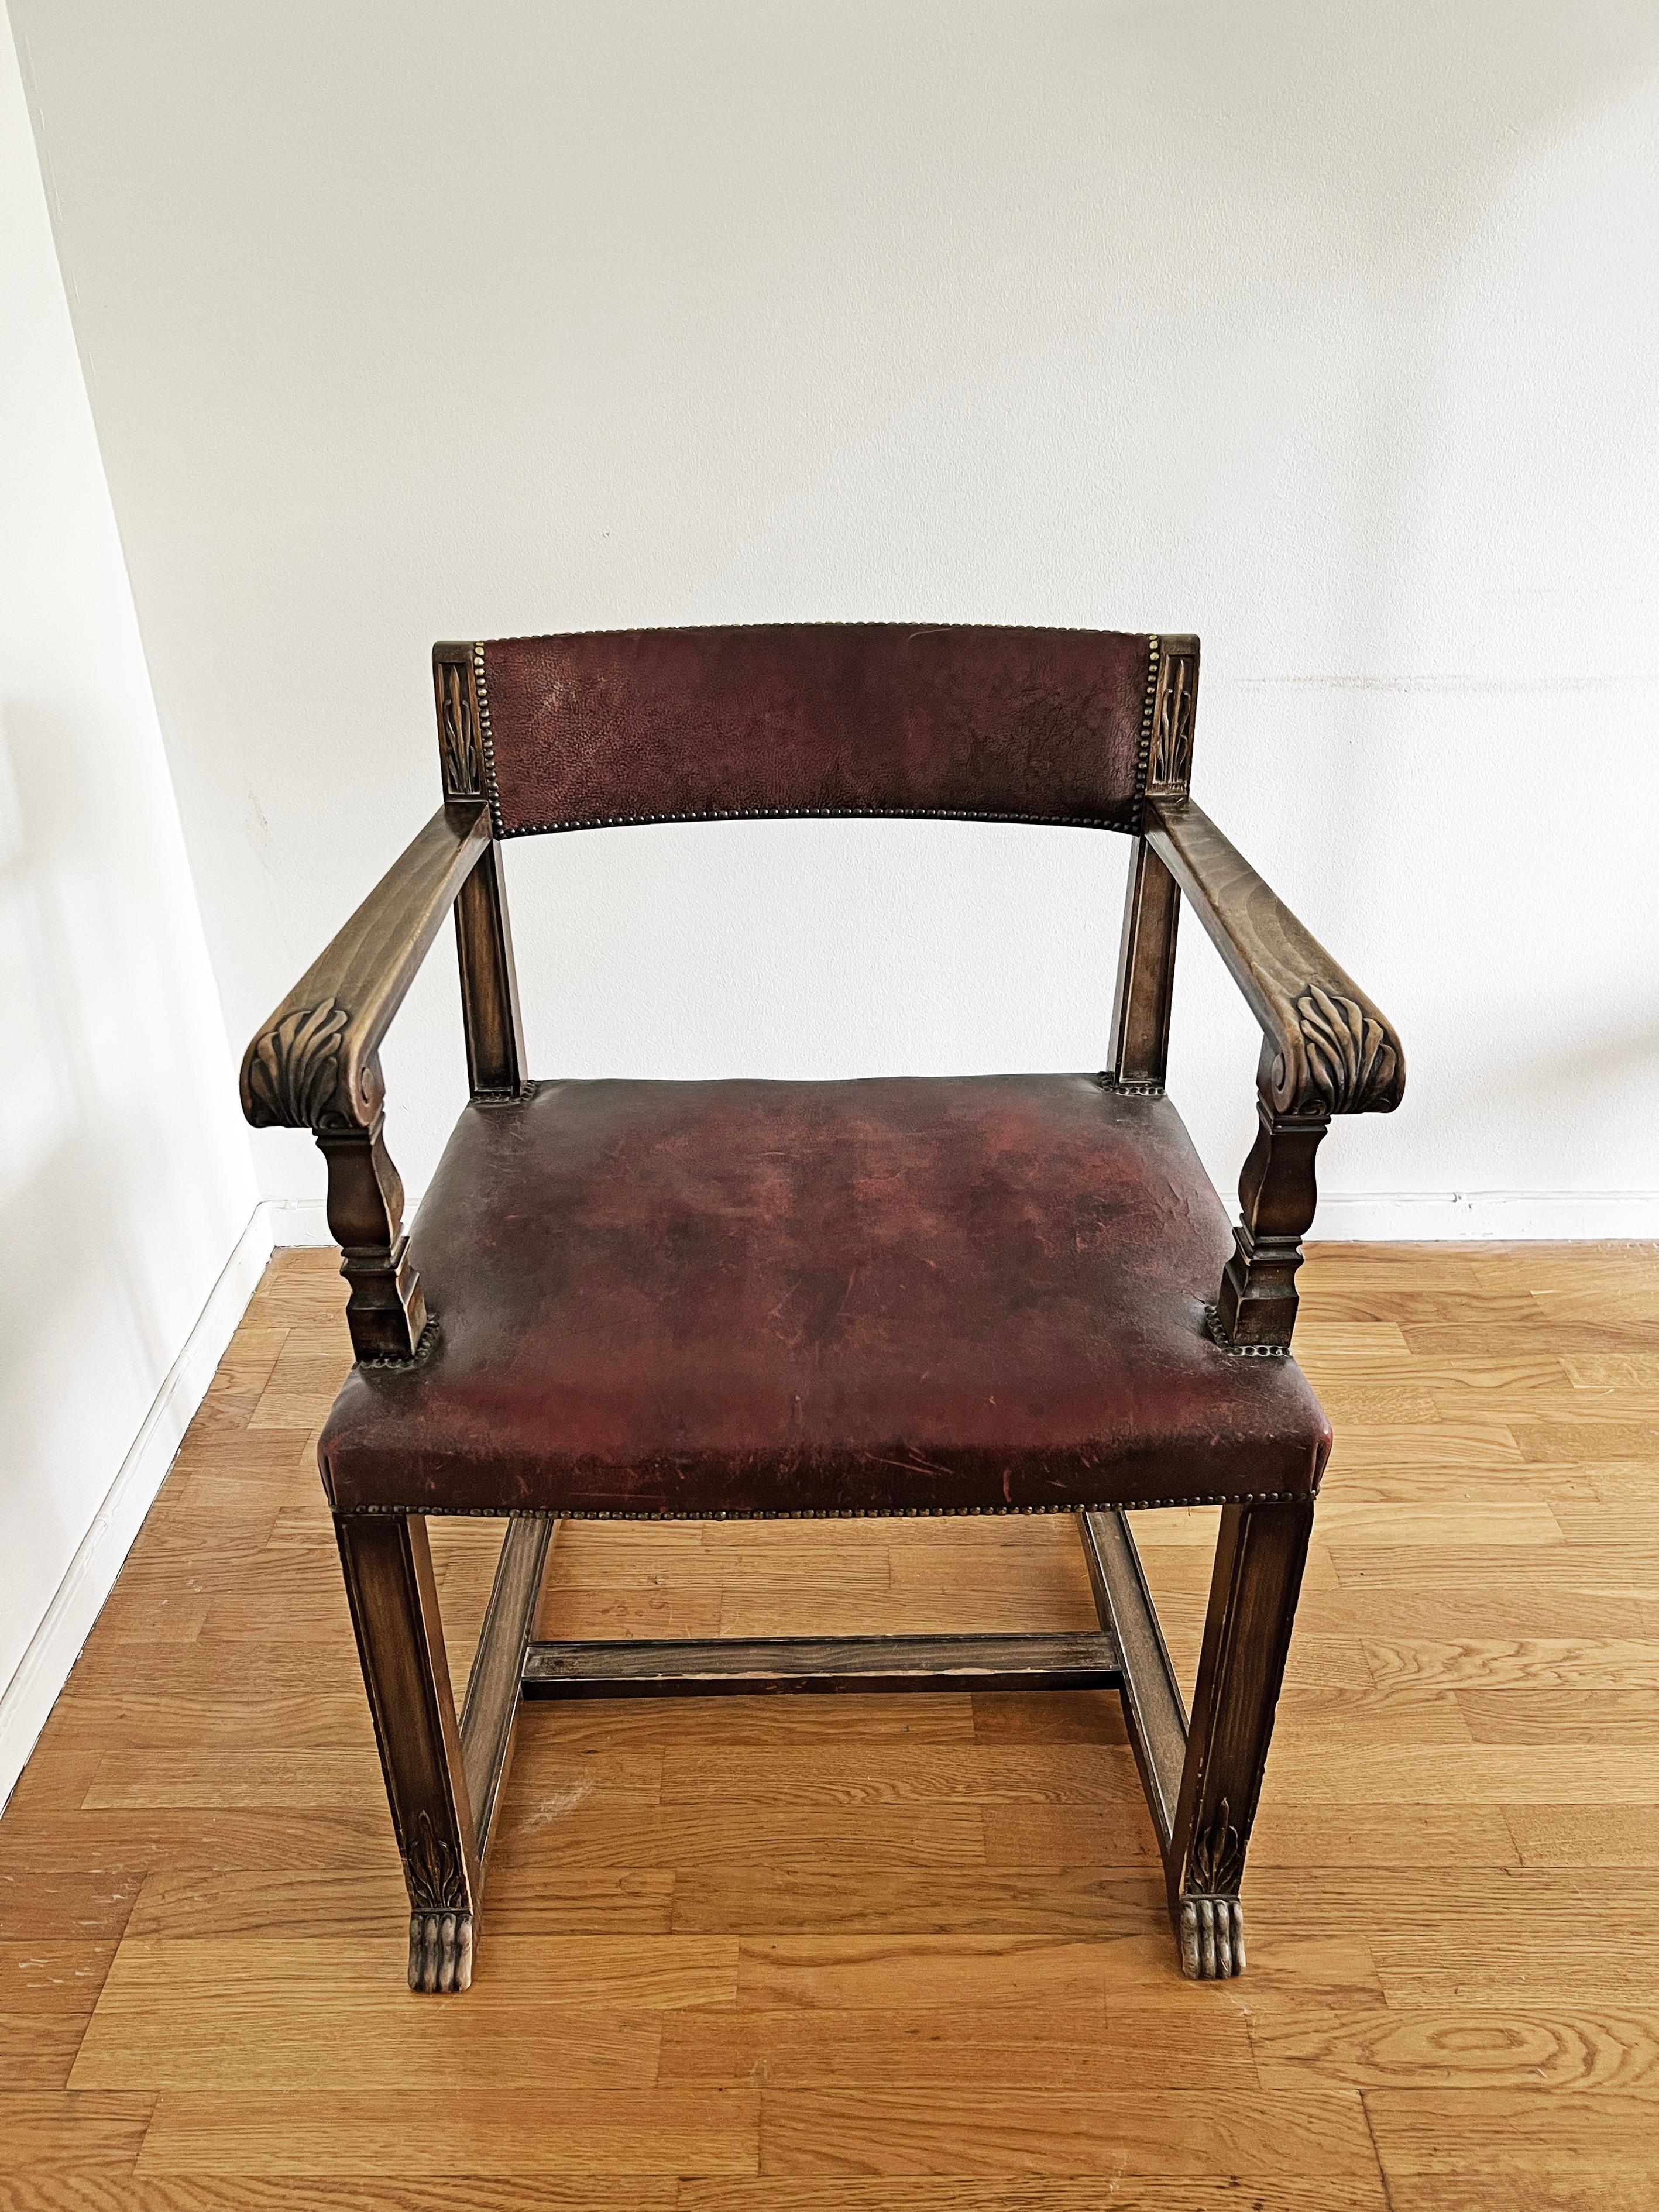 Chaise cool avec structure en chêne et assise en cuir, vers 1920-1930.
Les bras et les jambes sont magnifiquement travaillés. Patine sur le cuir. 
Marqué d'un H sous le siège, comme on peut le voir sur la dernière photo. 

Le cuir du siège présente